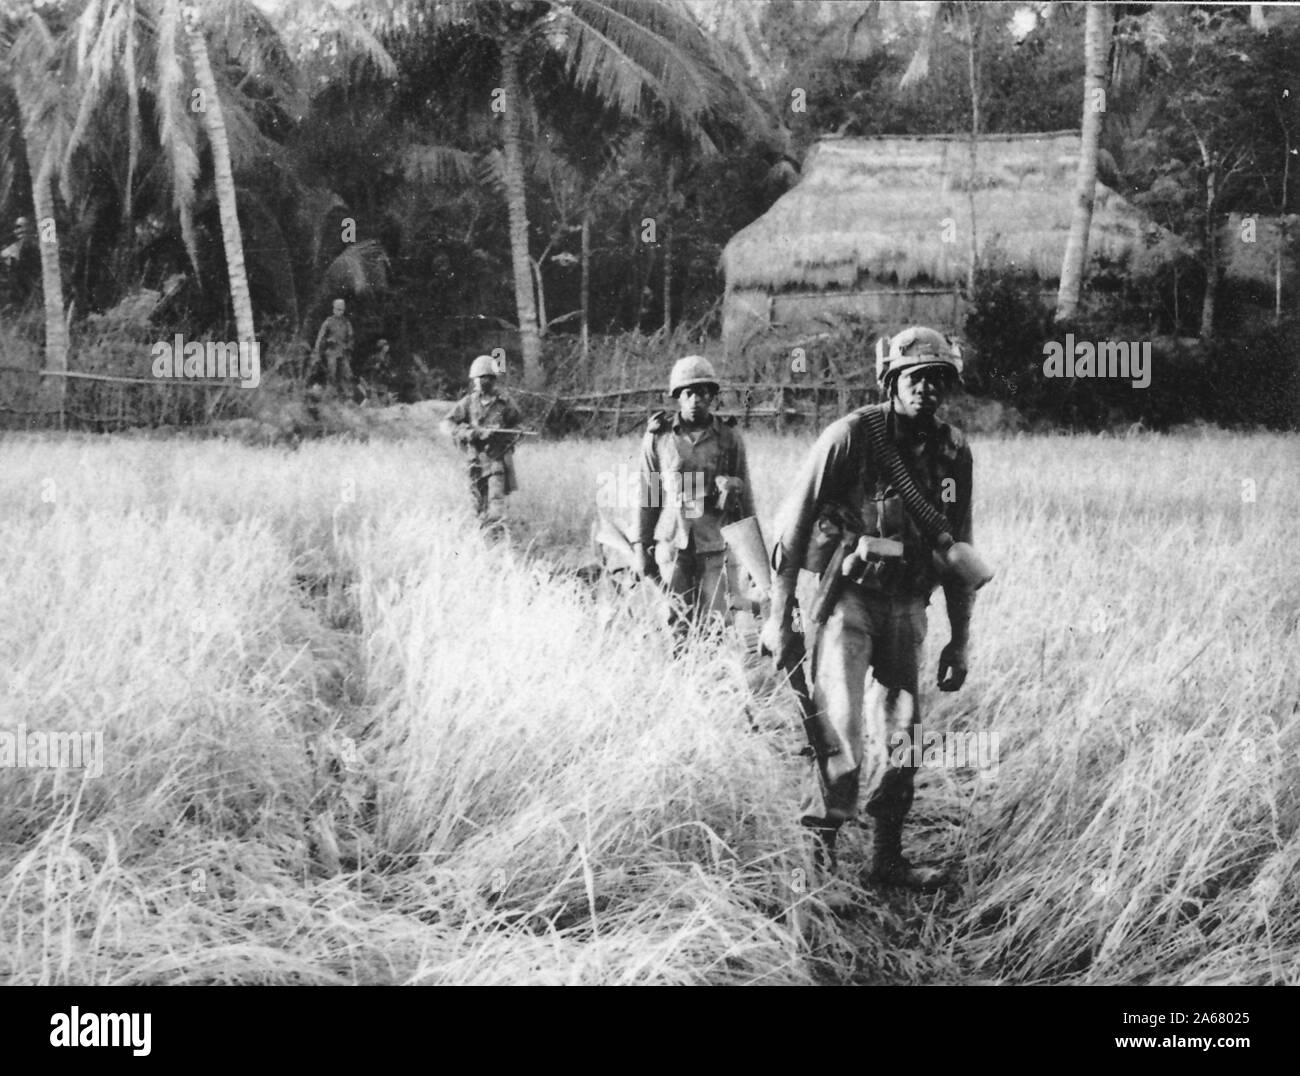 Prise de vue pleine longueur de plusieurs militaires américains, marchant dans une ligne vers la caméra à travers un champ ouvert, avec des expressions appréhensives sur leurs visages, Vietnam, 1965. () Banque D'Images